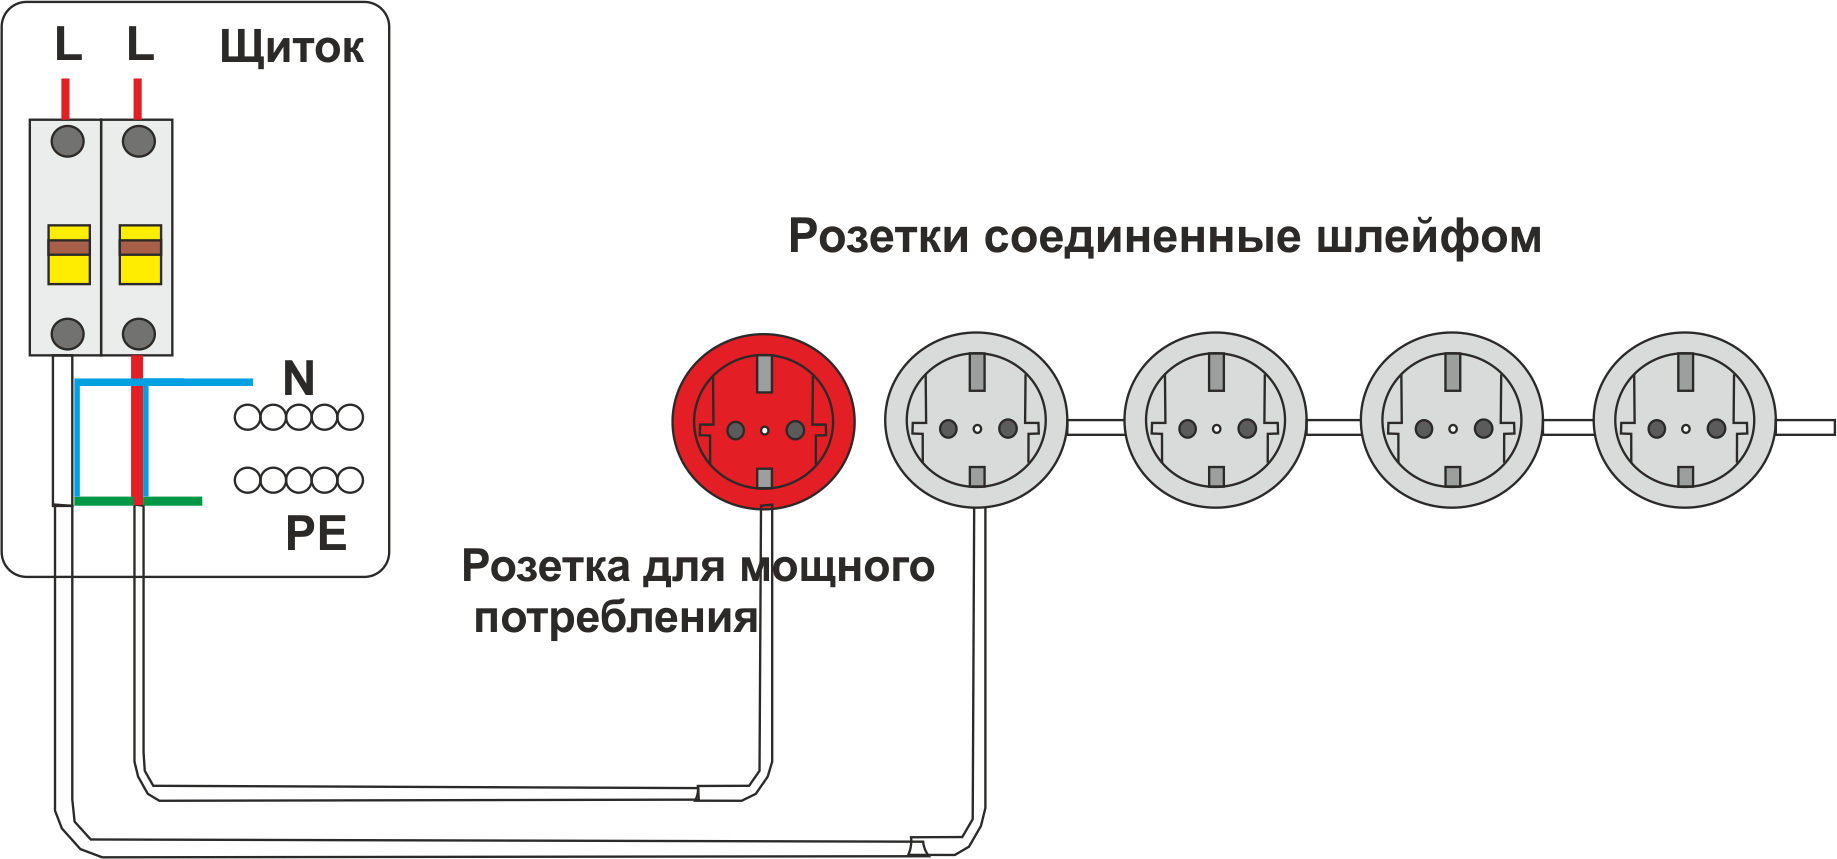 Выбор и установка розеток и выключателей: инструкция с фото и видео | 5domov.ru - статьи о строительстве, ремонте, отделке домов и квартир